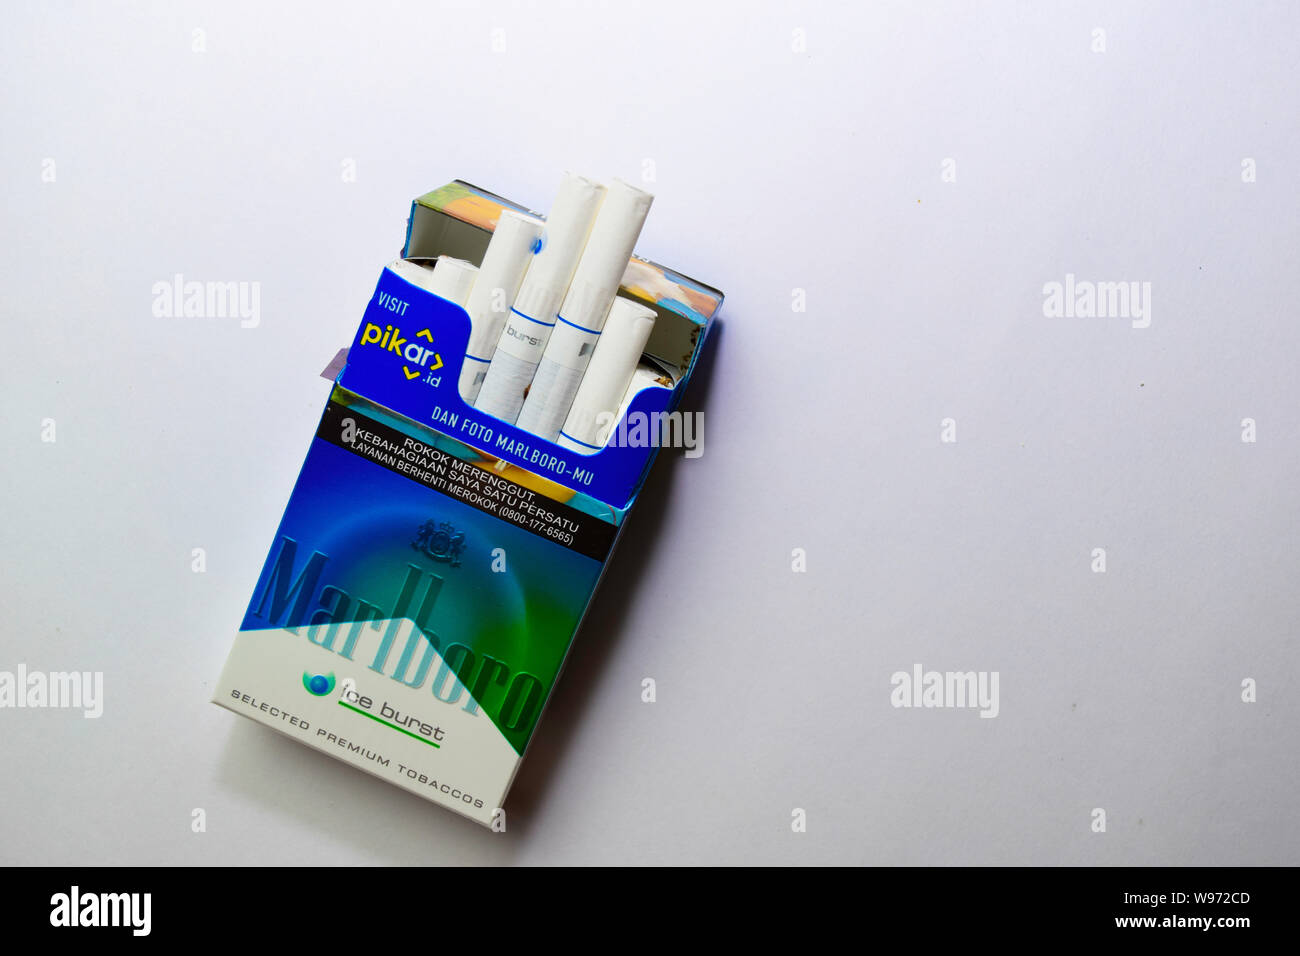 Bekasi, Indonésie - 13 août 2019 : Pack de cigarettes de Marlboro, faite par Philip Morris. Marlboro est la plus grande marque de cigarettes dans l'w Banque D'Images